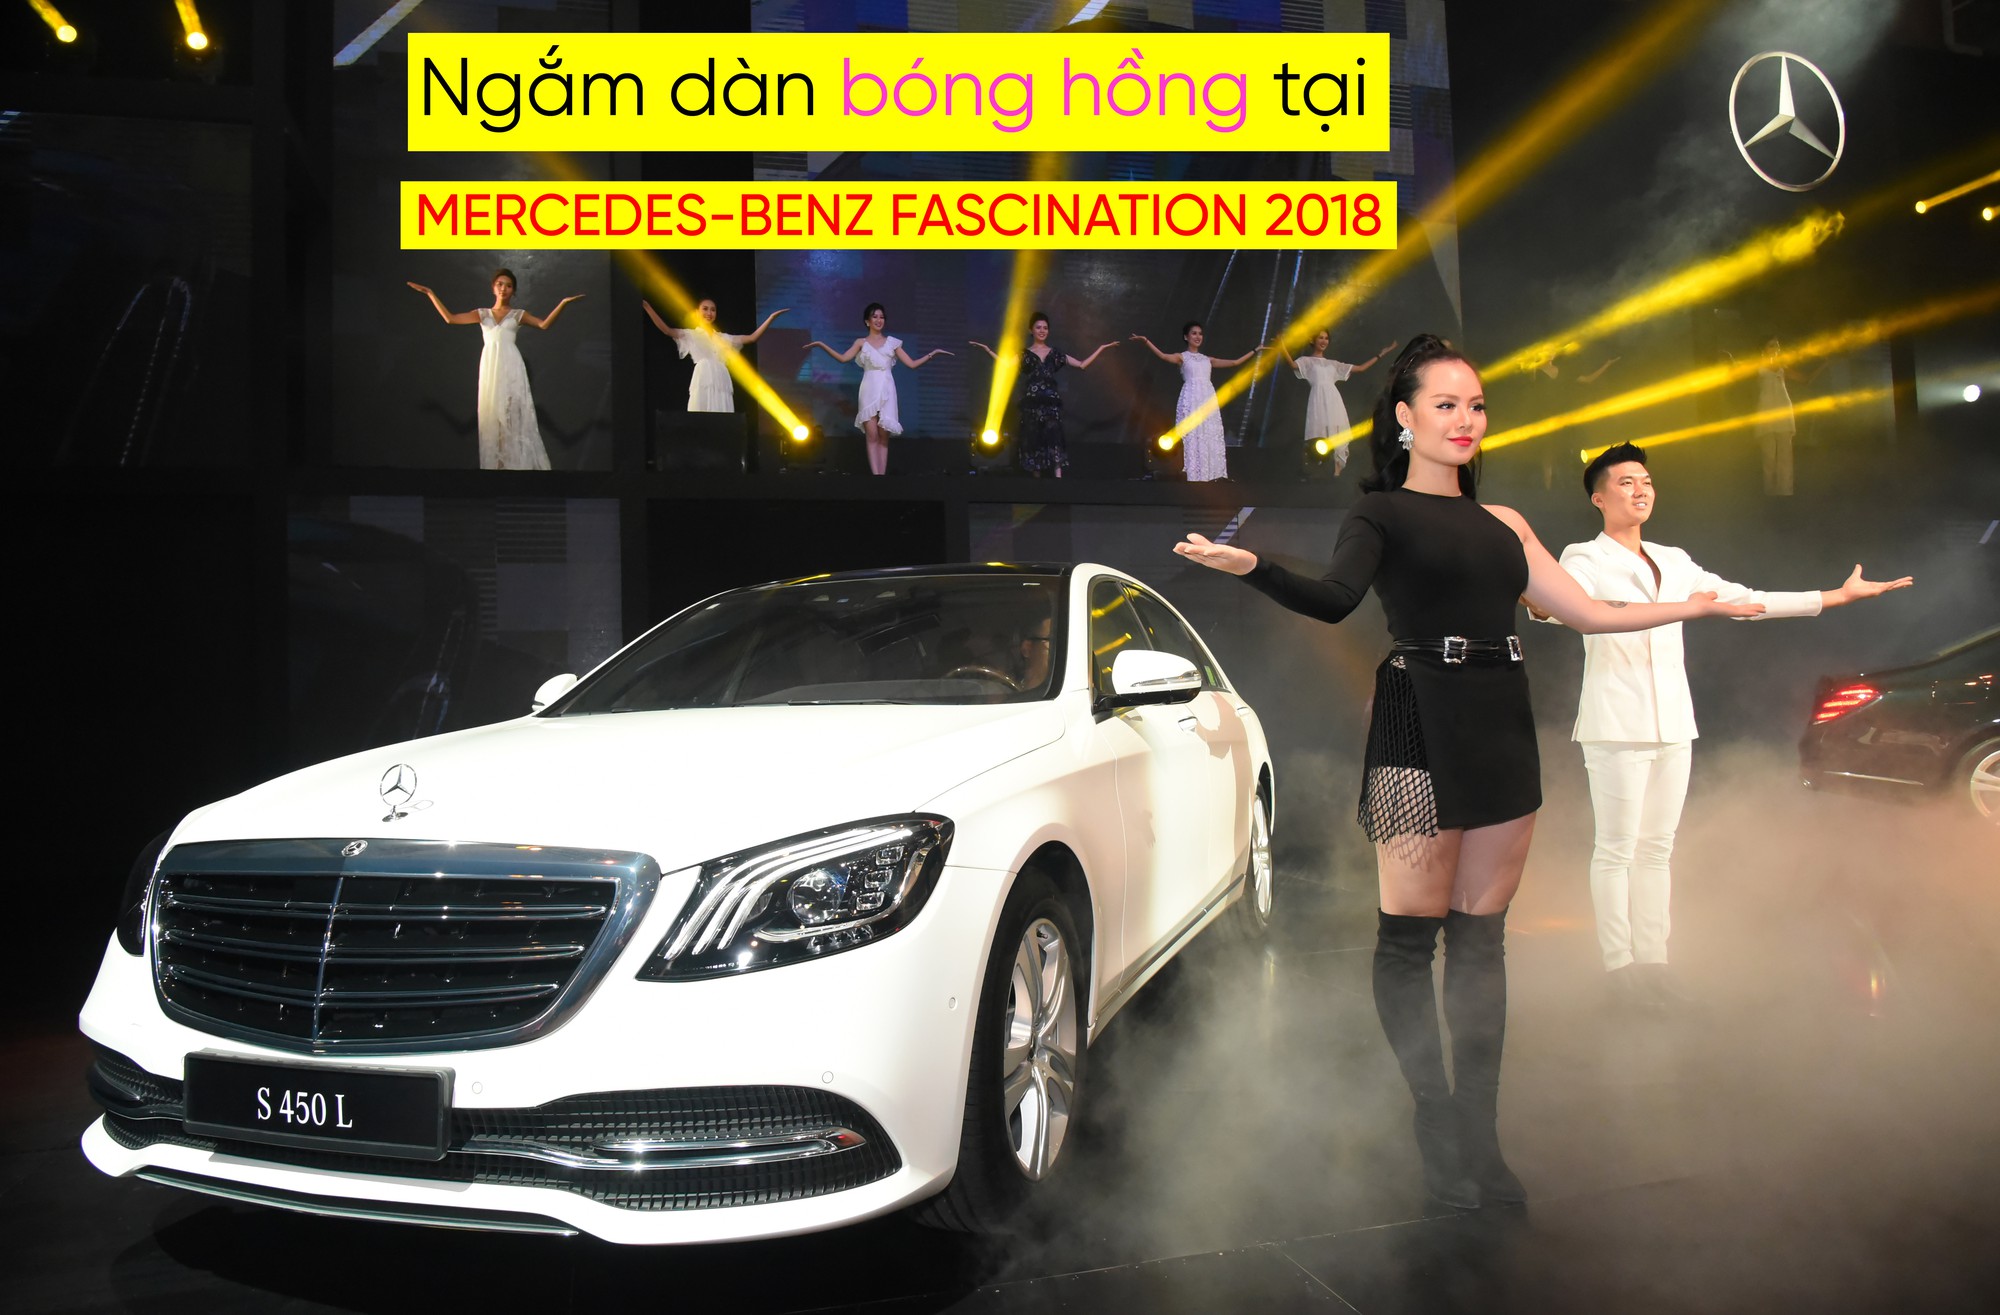 Ngắm dàn bóng hồng tại Mercedes-Benz Fascination 2018